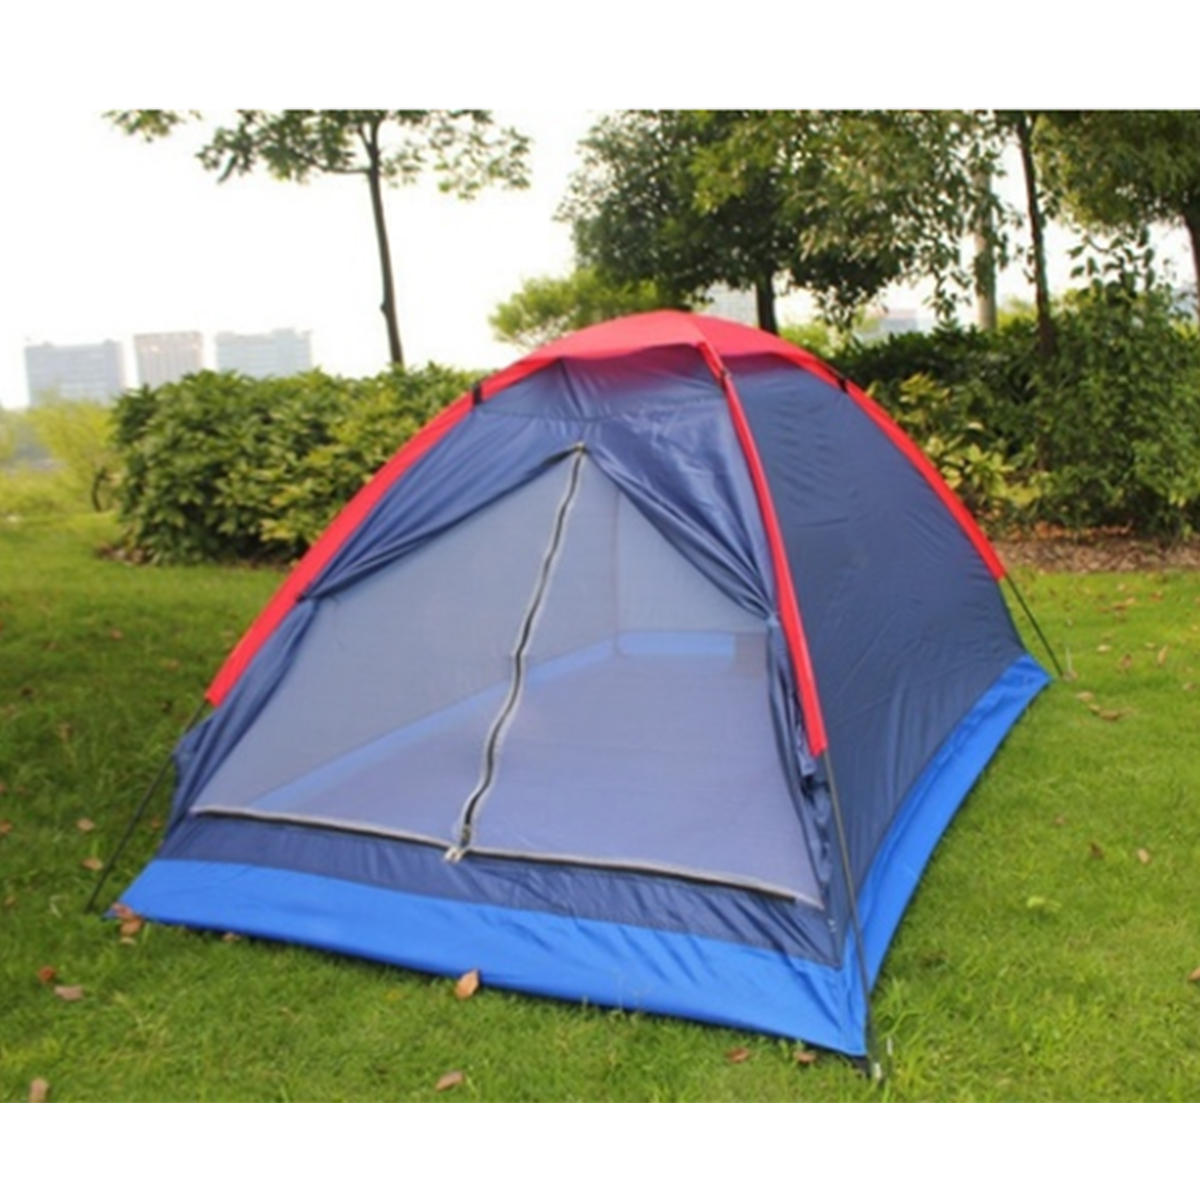 Namiot kempingowy dla 2 osób, pojedyncza warstwa, namiot plażowy, na zewnątrz, wiatroszczelny, wodoodporny, namiot letni z losowym kolorowym workiem.